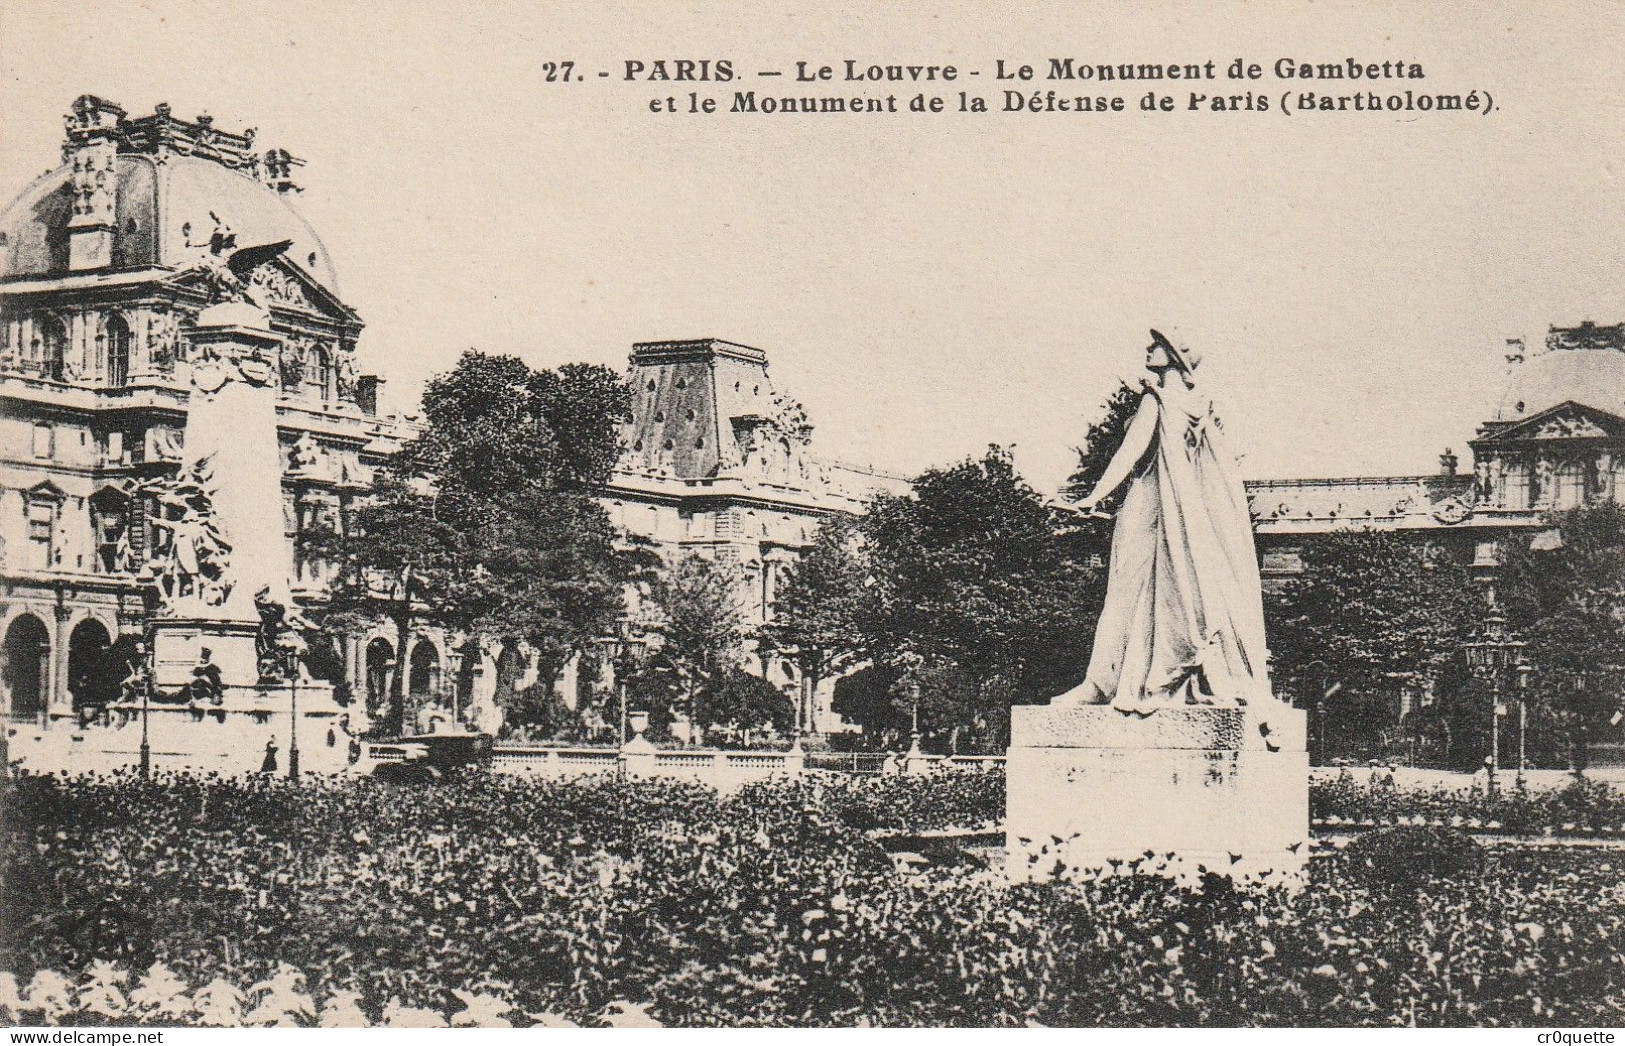 # 75000 PARIS / LE LOUVRE et CLUNY en 23 CARTES POSTALES de 1905 à 1950